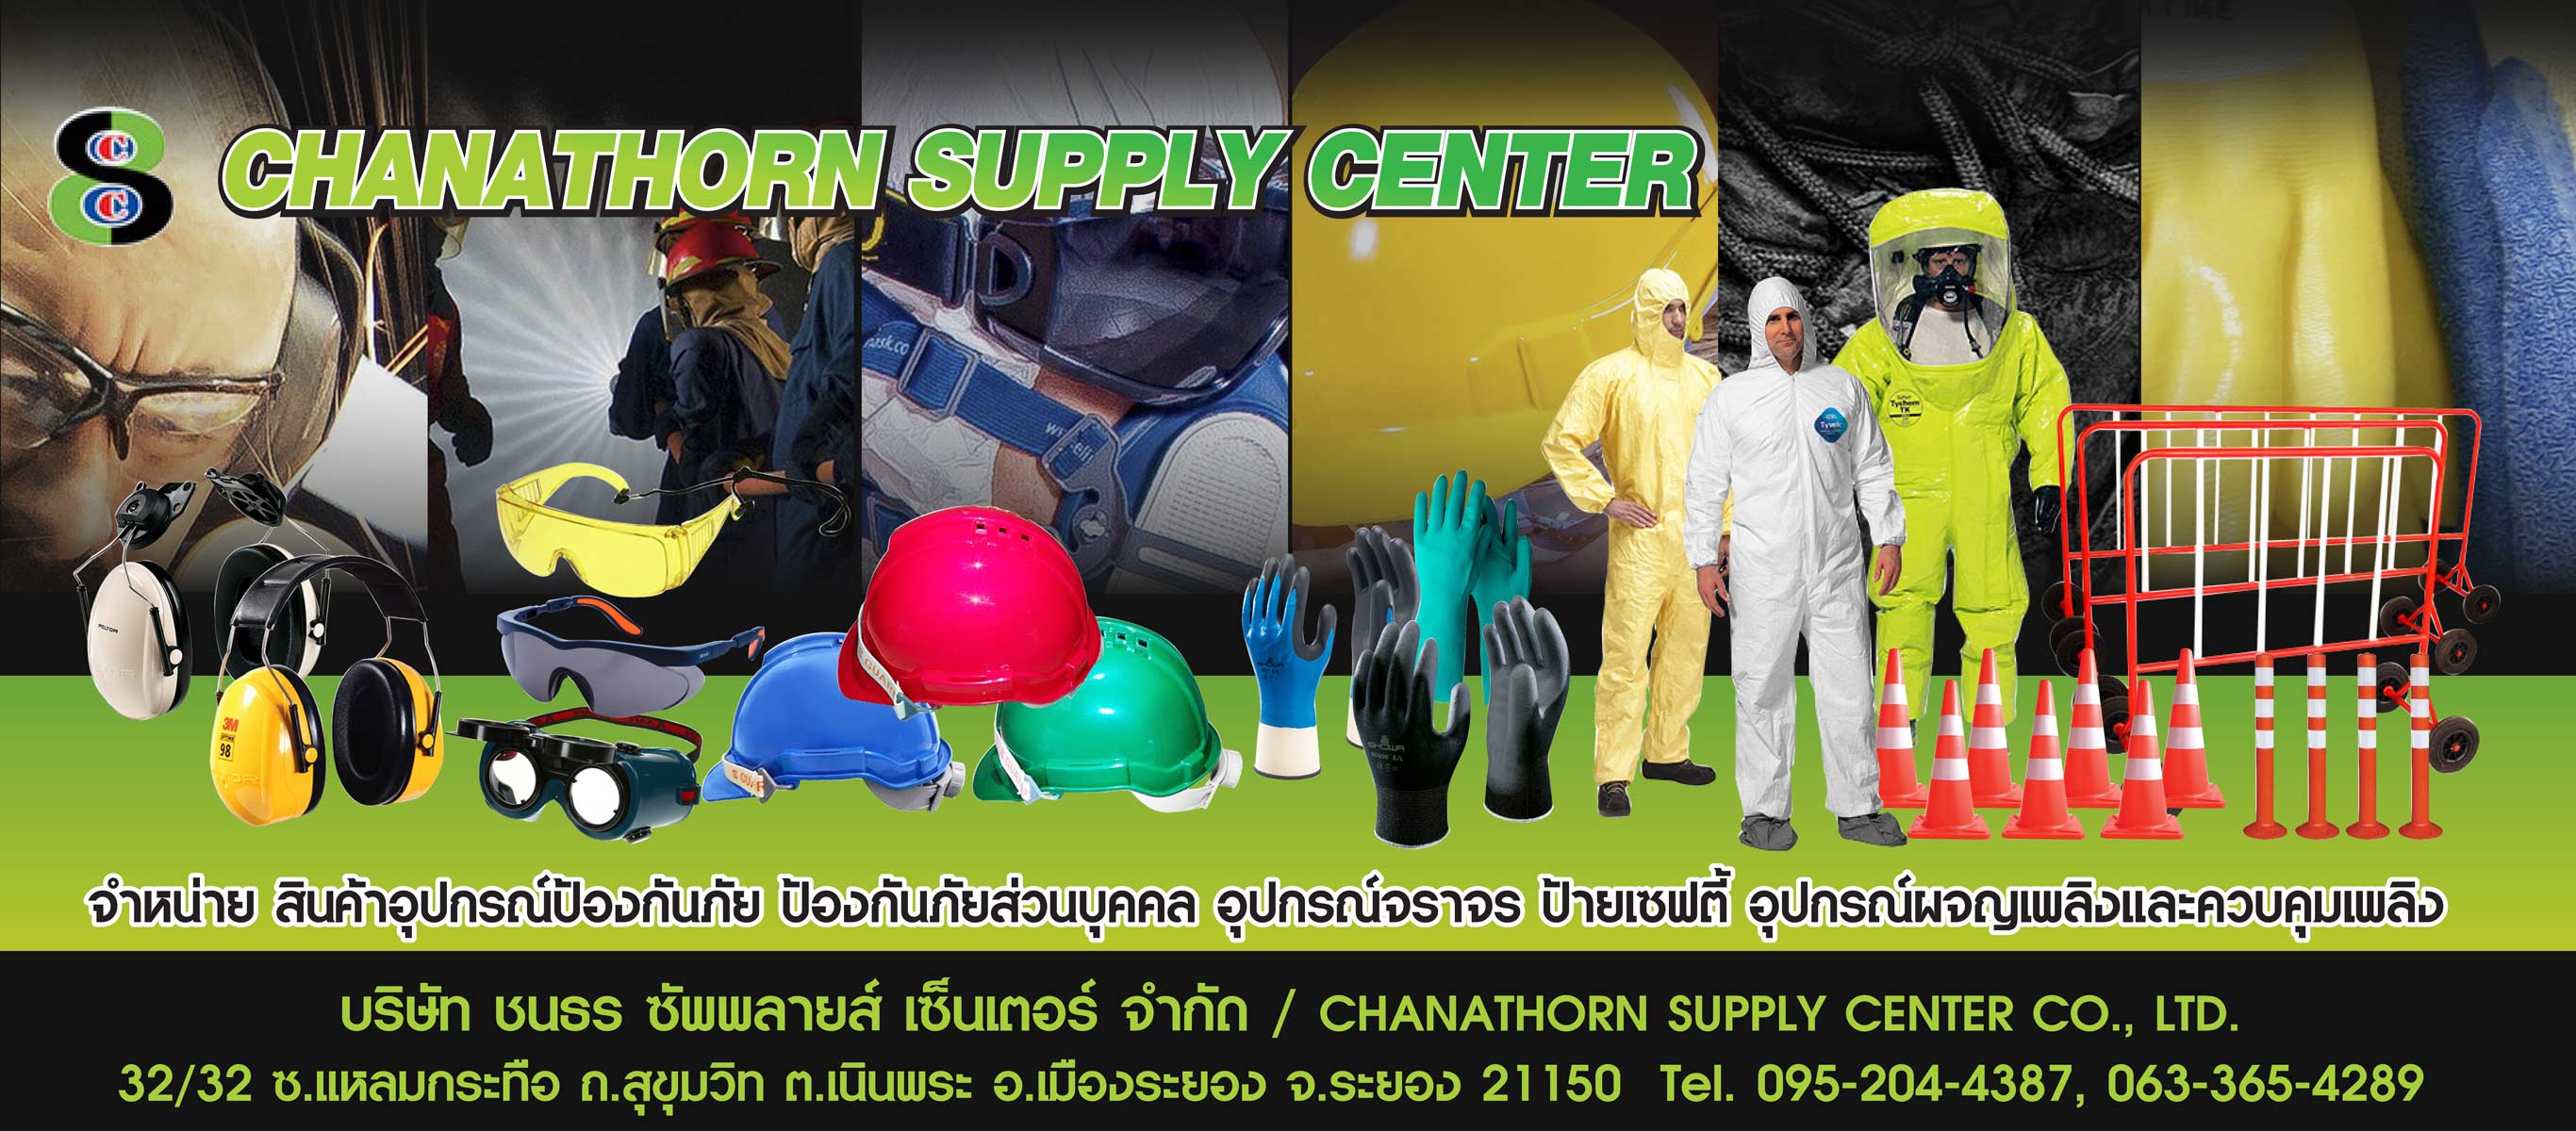 จำหน่ายสินค้าประเภทอุปกรณ์ป้องกันภัยส่วนบุคคล (PPE) 